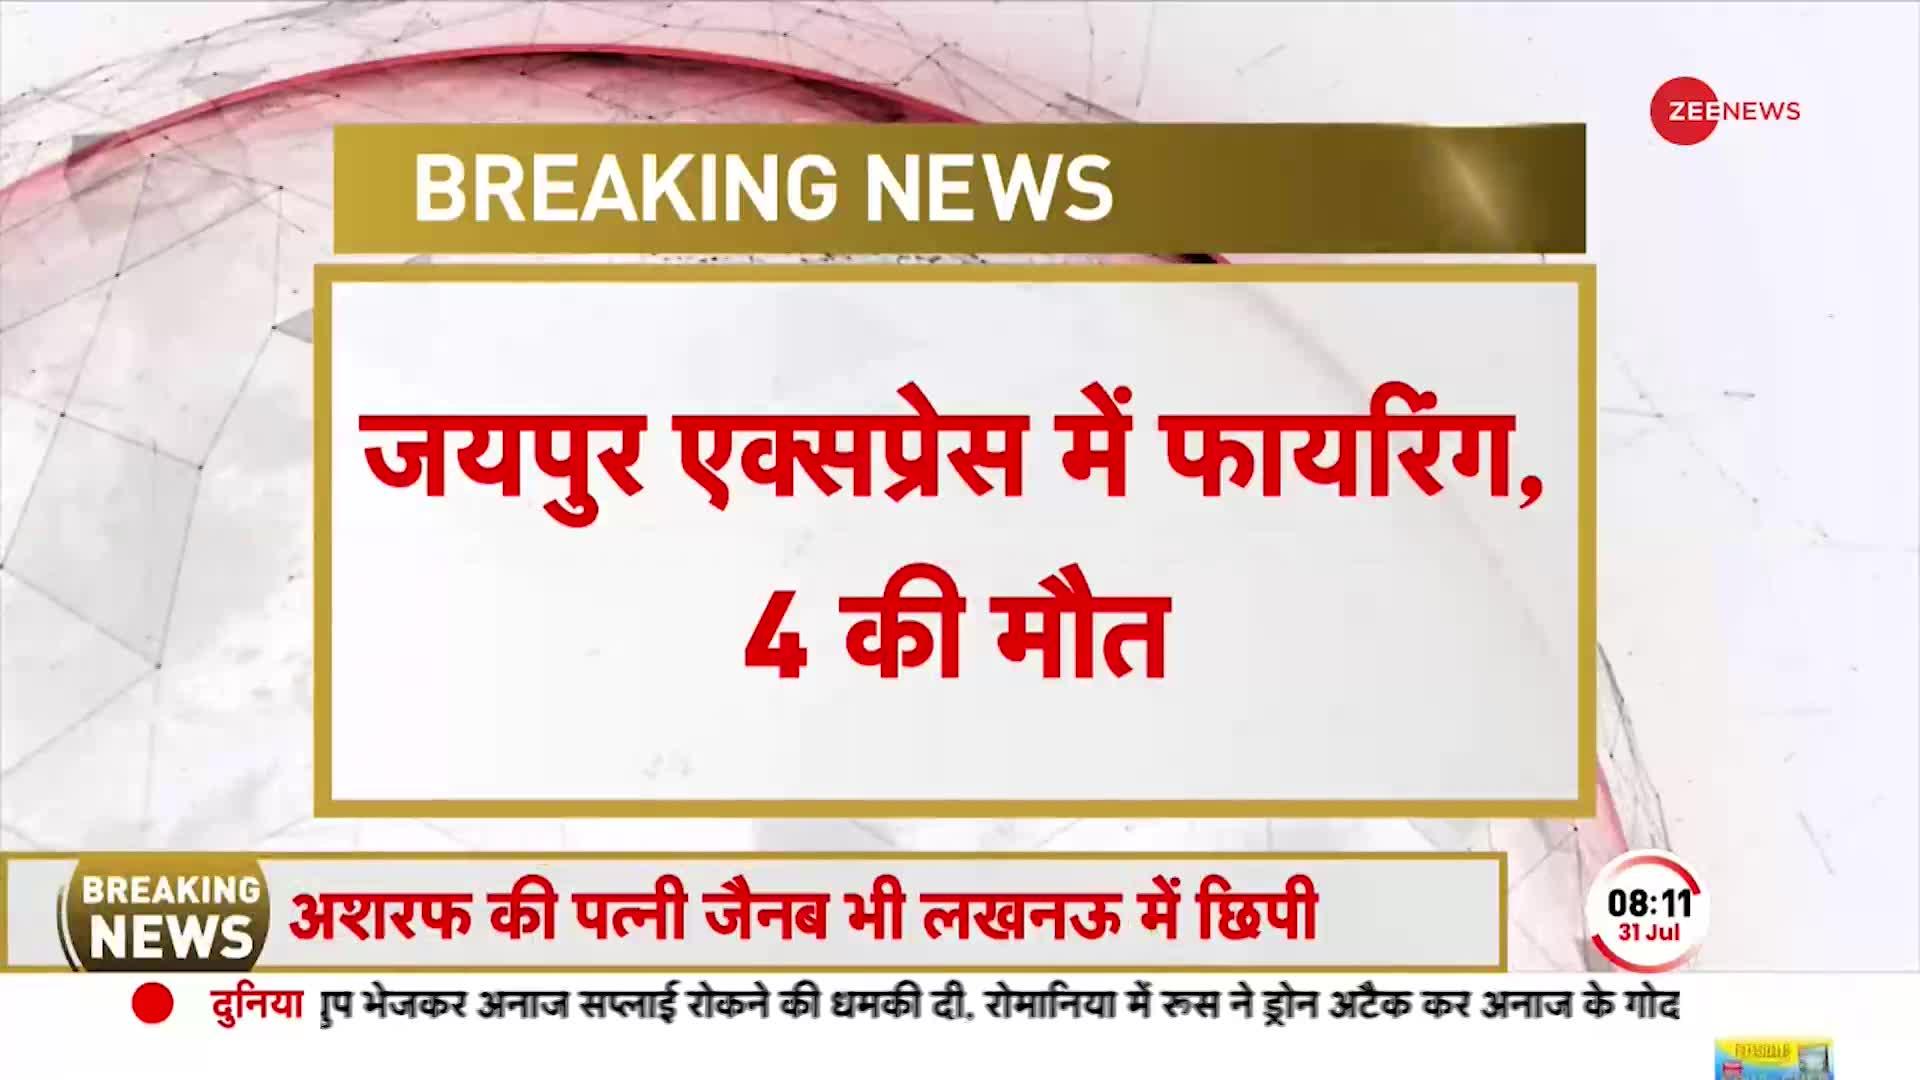 Breaking News: जयपुर एक्सप्रेस में फायरिंग, 4 लोगों की मौत, मुंबई जा रही थी ट्रेन